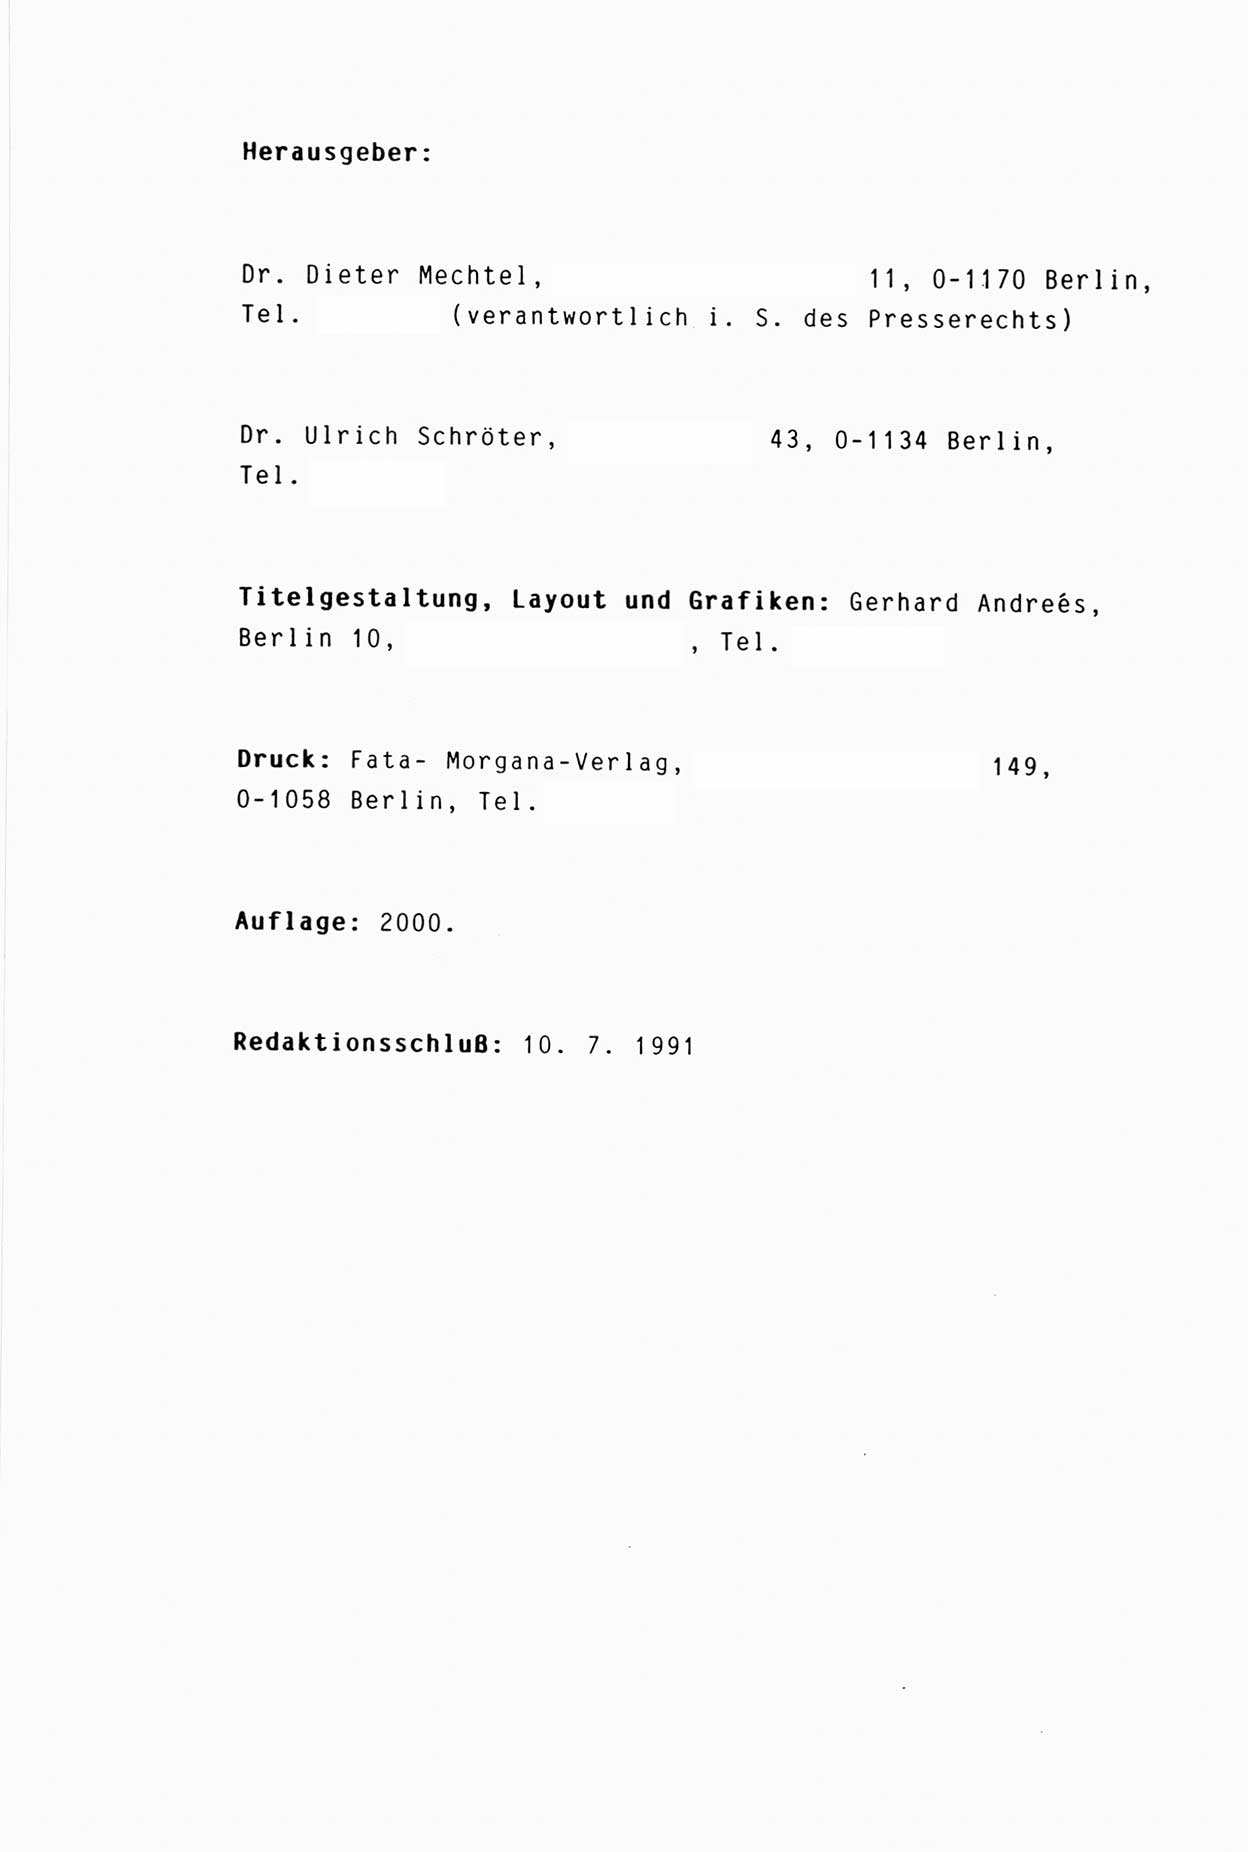 Zwie-Gespräch, Beiträge zur Aufarbeitung der Stasi-Vergangenheit [Deutsche Demokratische Republik (DDR)], Ausgabe Nr. 3, Berlin 1991, Seite 42 (Zwie-Gespr. Ausg. 3 1991, S. 42)